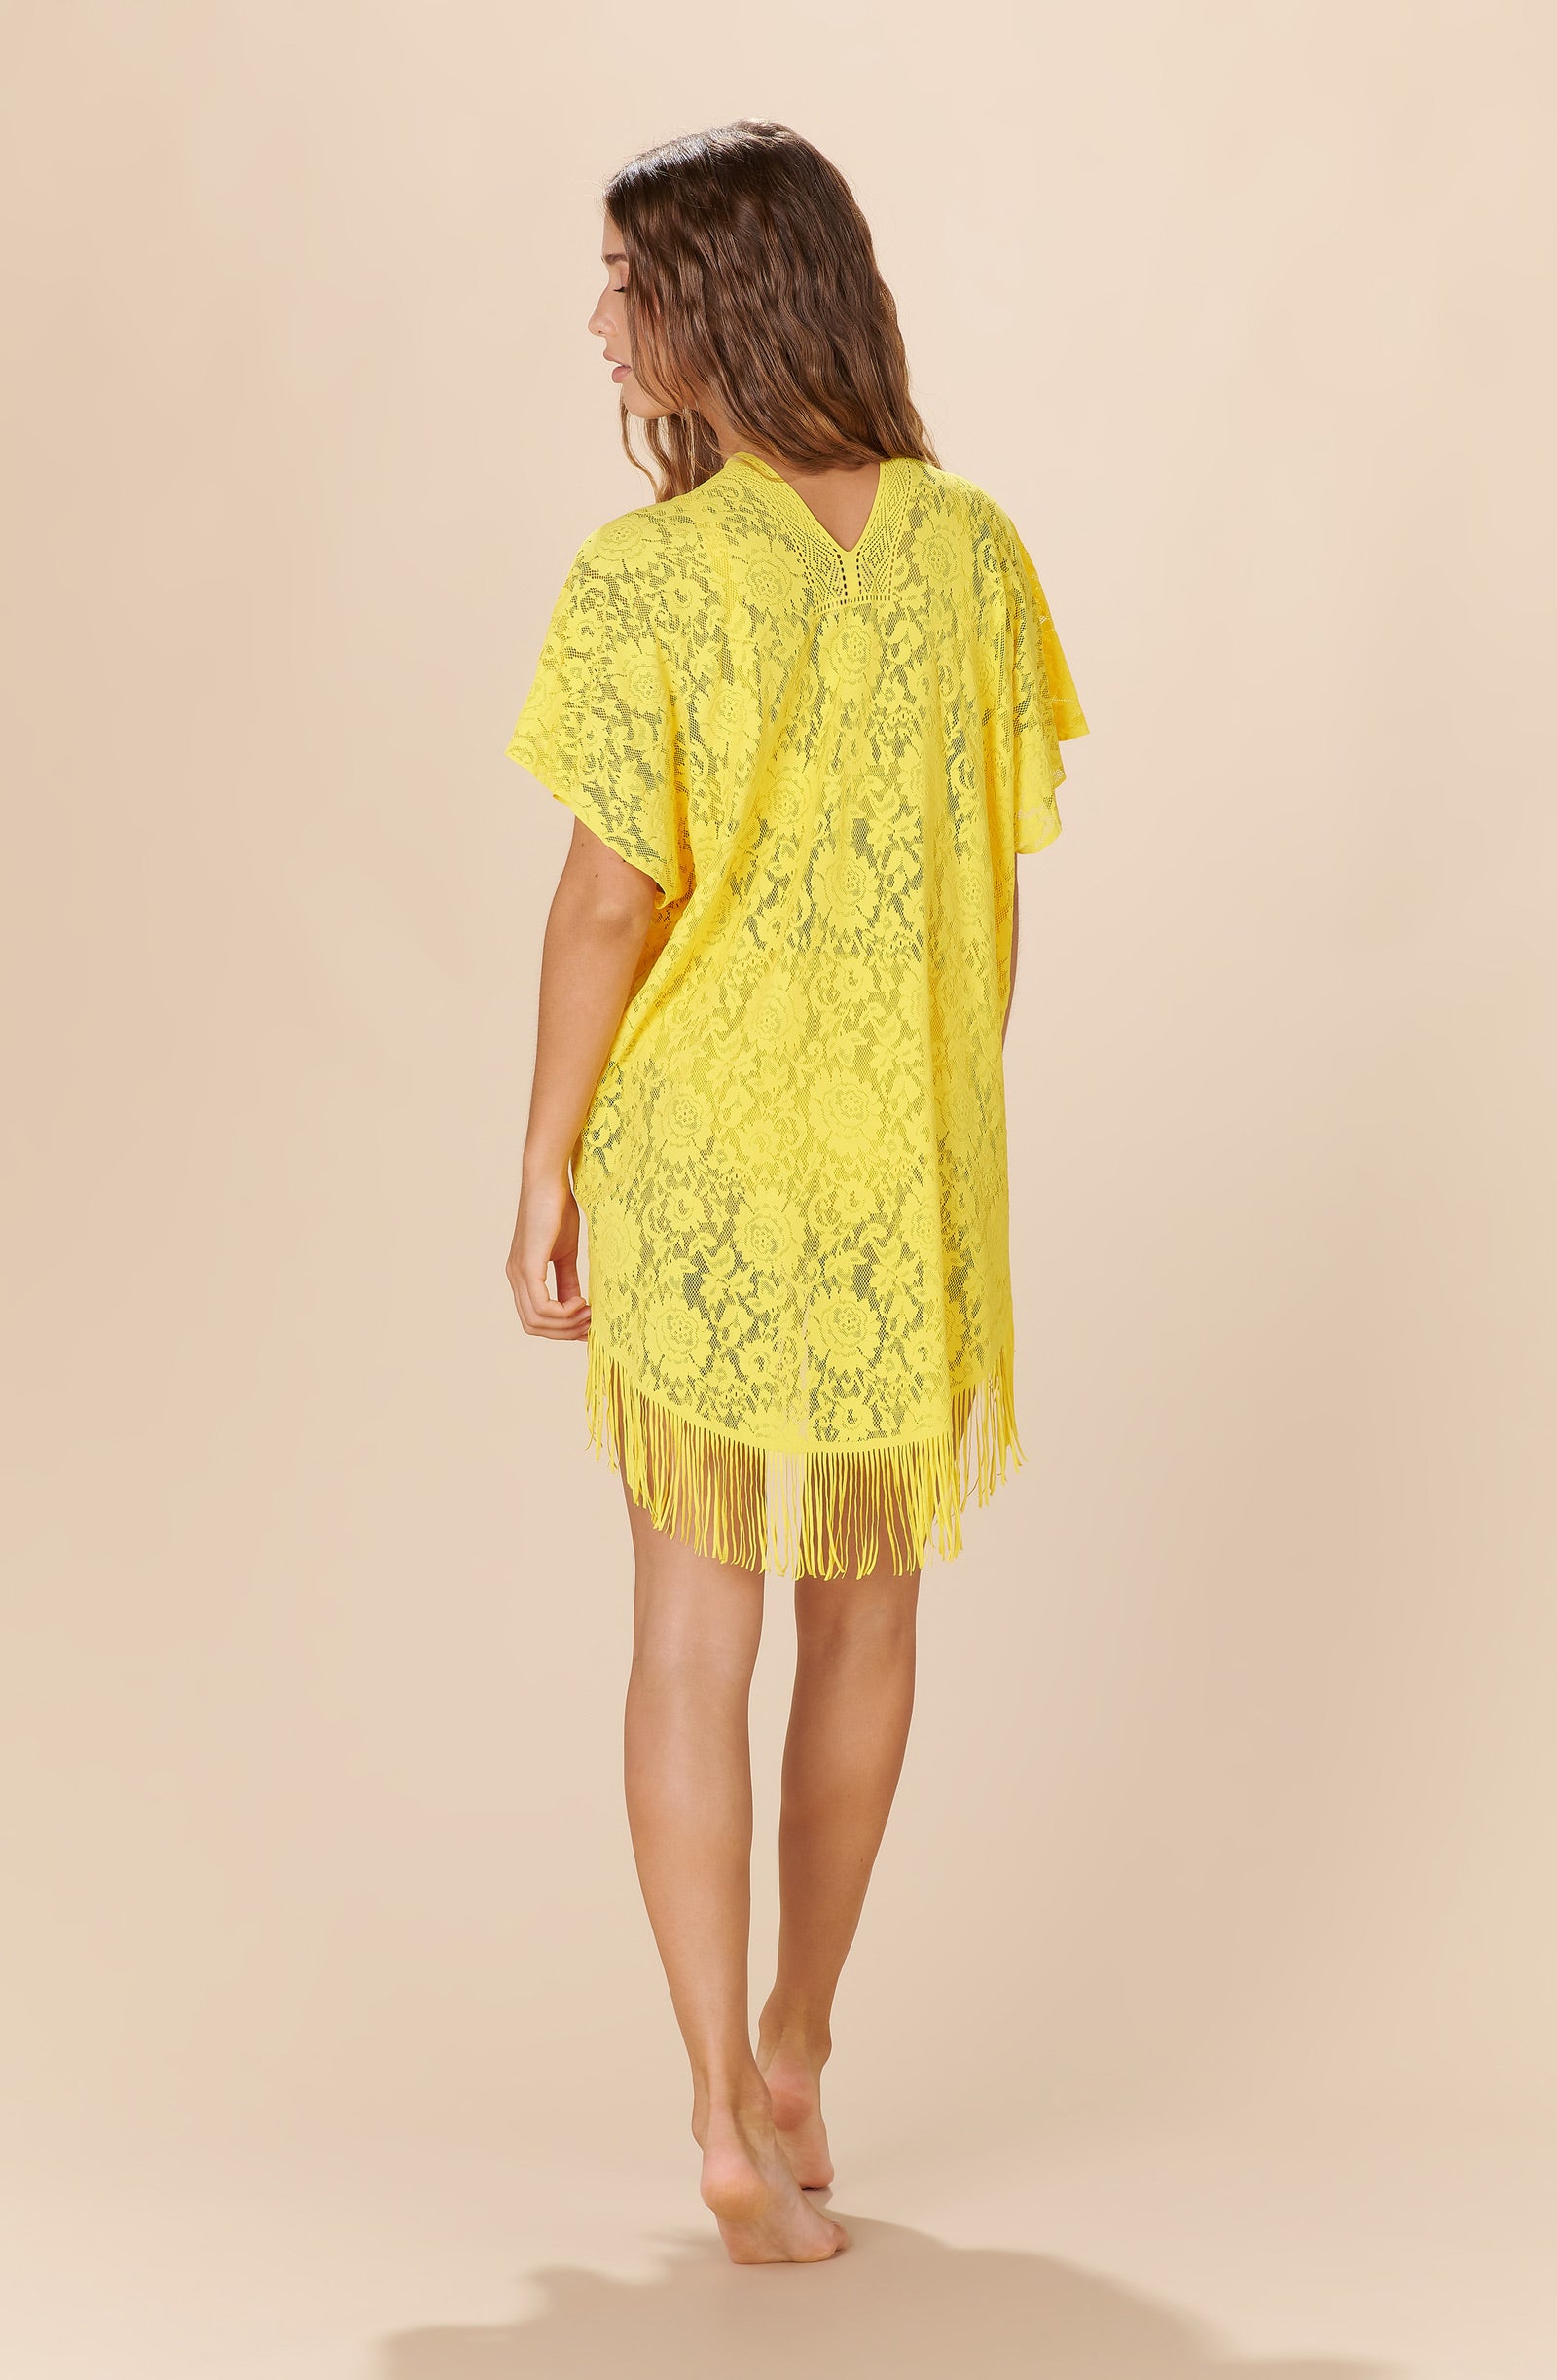 jesse Sun yellow lace poncho tunic